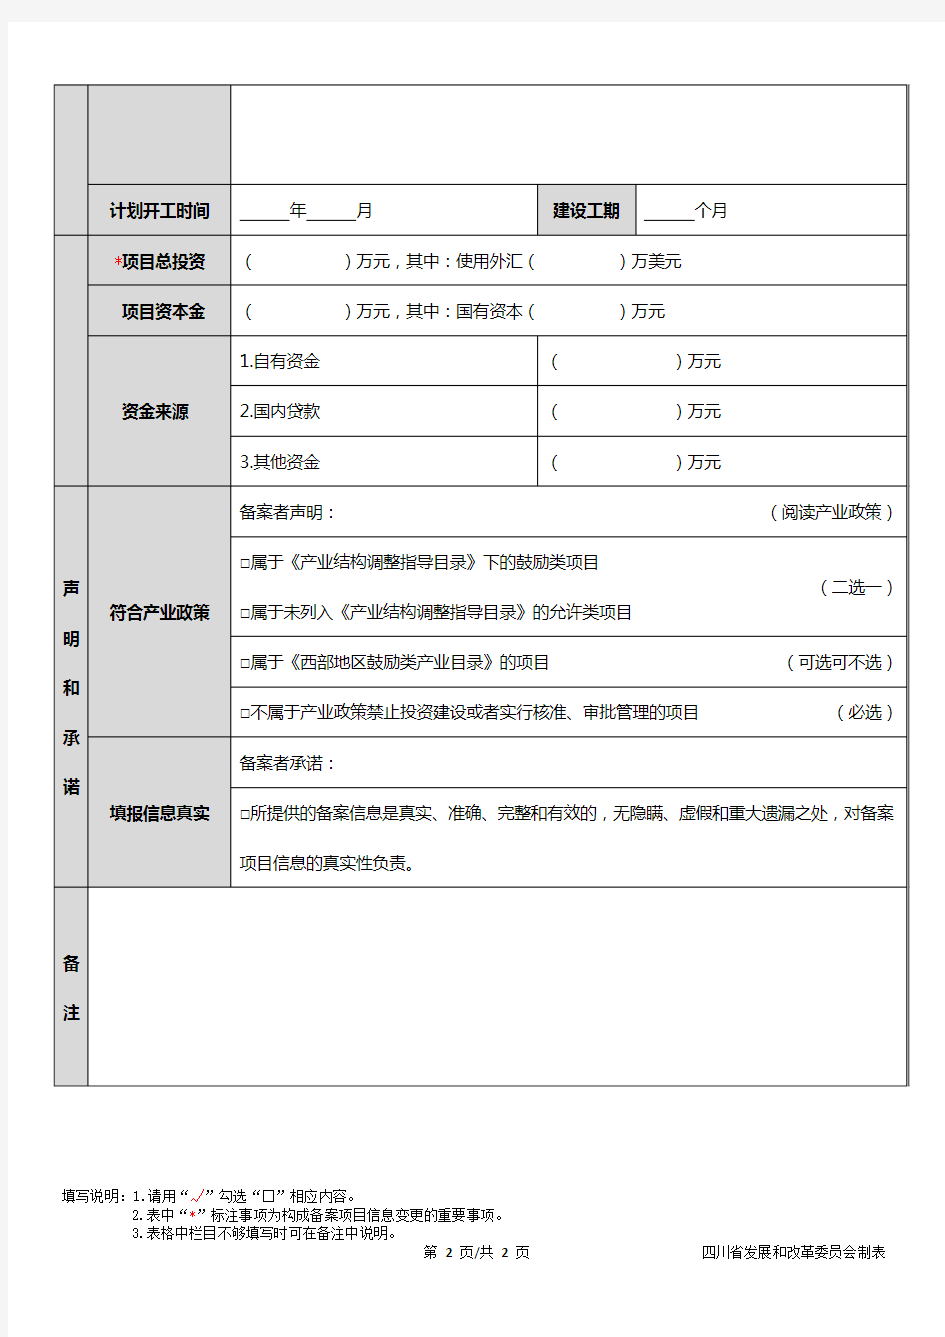 四川省固定资产投资项目备案表+-+填报版本